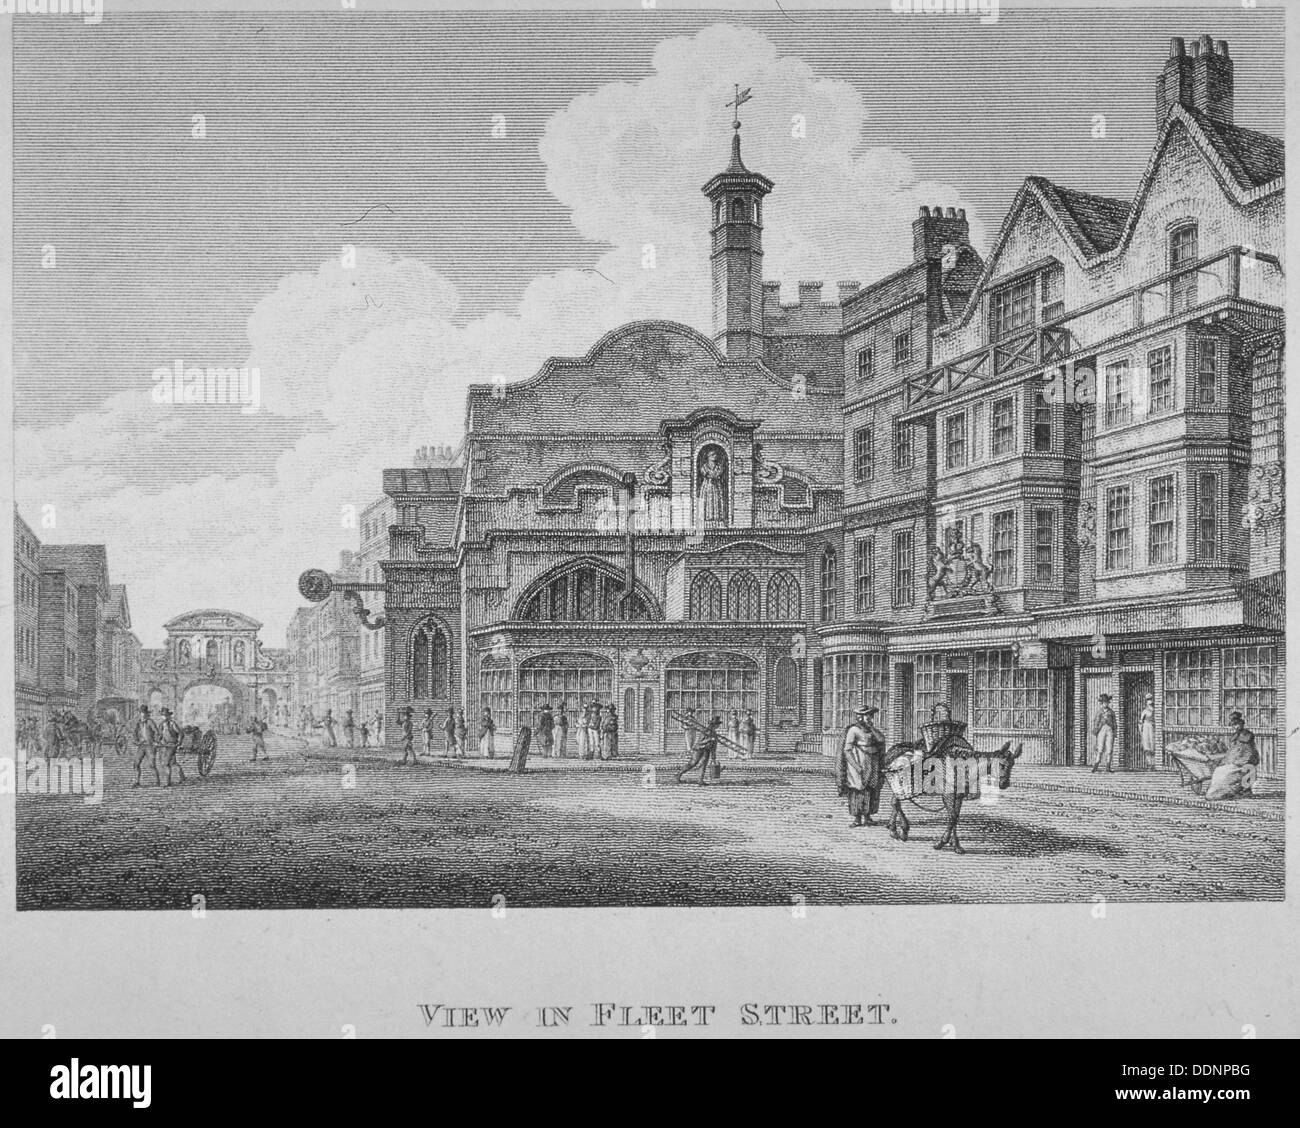 Fleet Street, City de Londres, 1800. Artista: William Watts Foto de stock